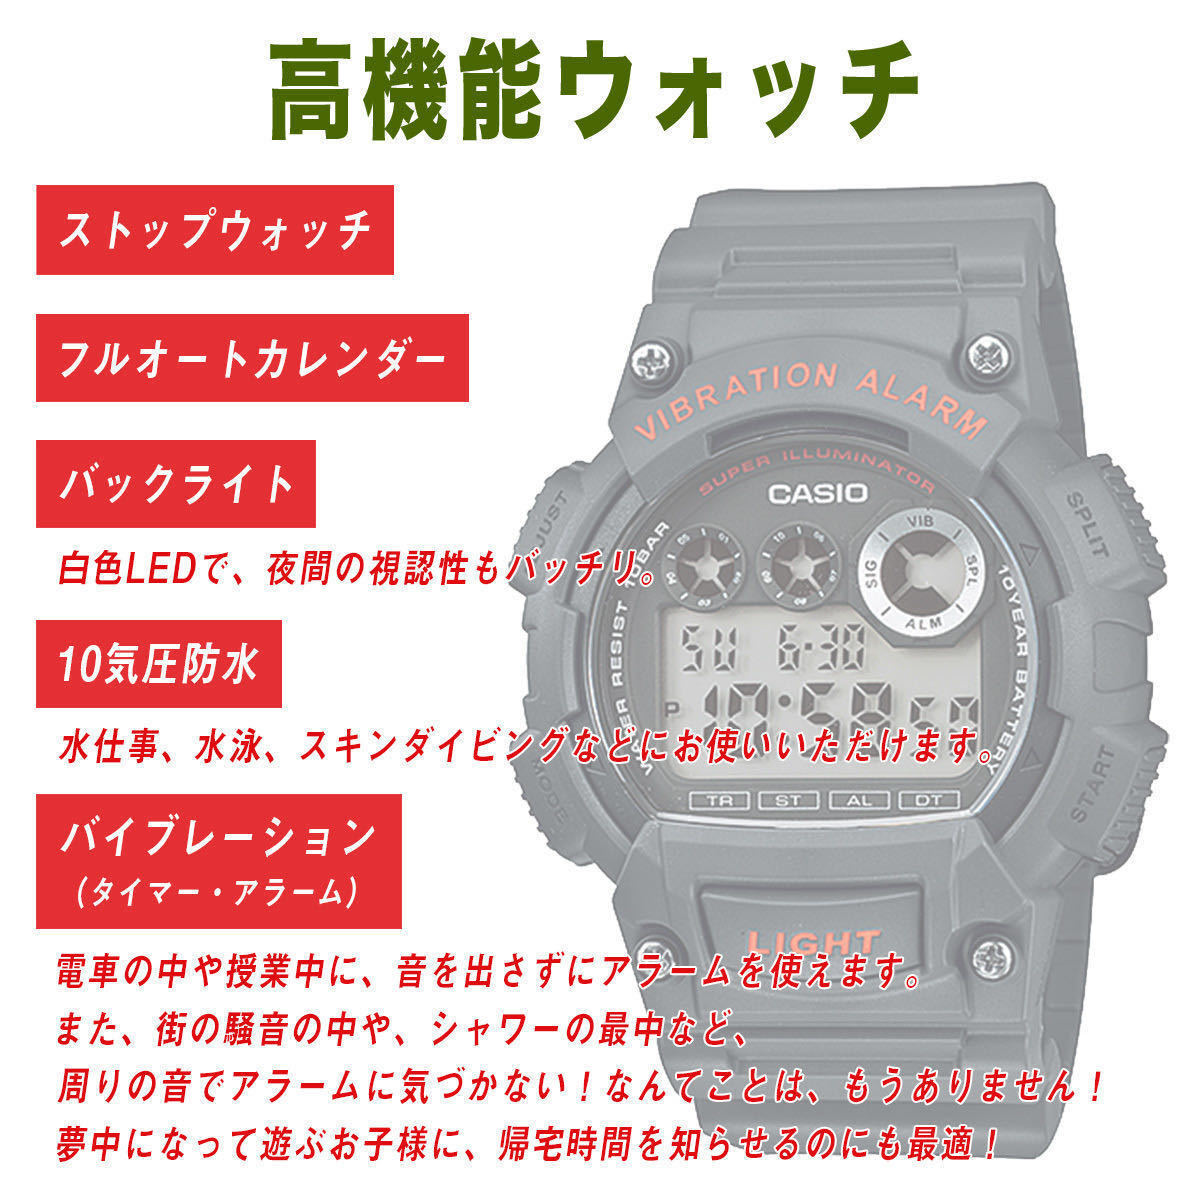 バイブレーション アラーム CASIO カシオ W735 ブラック ゴールド 腕時計 デジタル 男の子 メンズ 男性 キッズ 振動 バイブ 防水 軽量_画像4